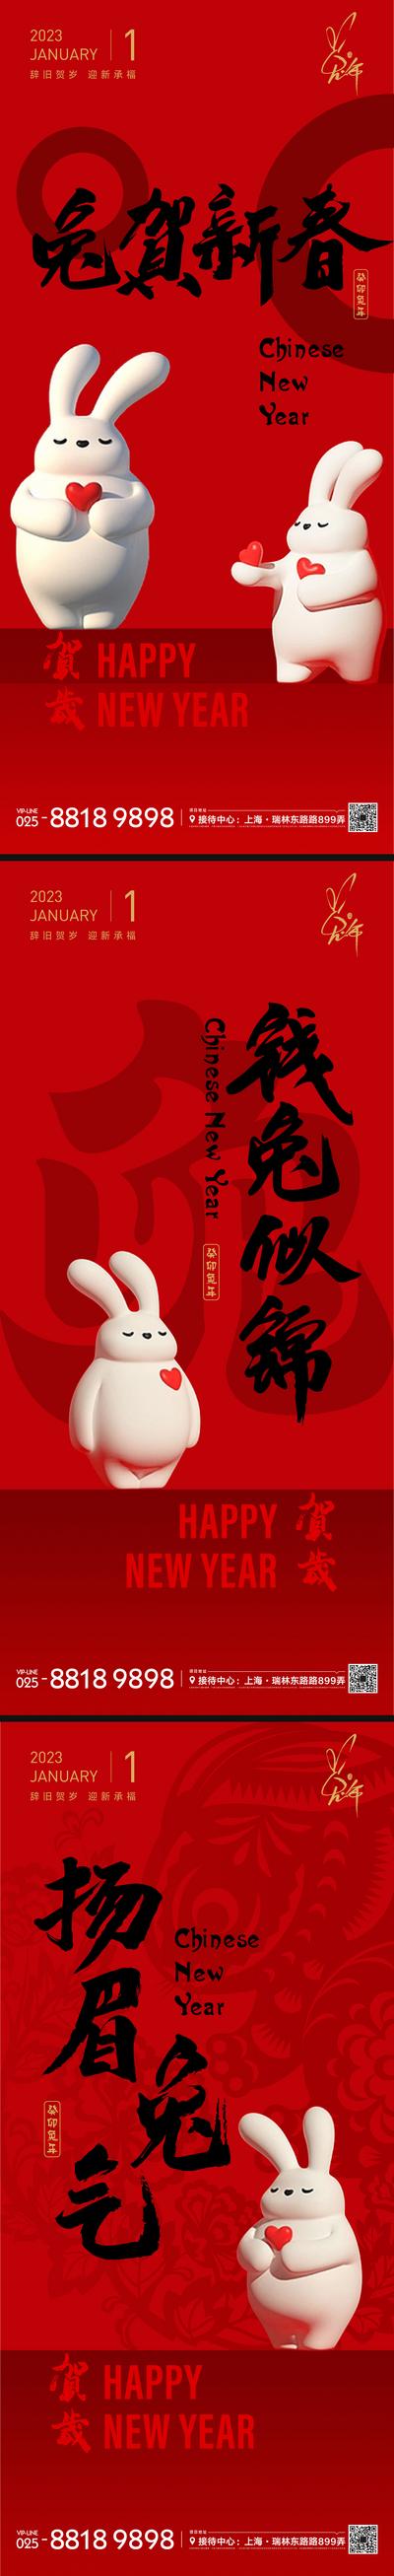 南门网 海报 公历节日 元旦 新年 兔年 兔子 插画